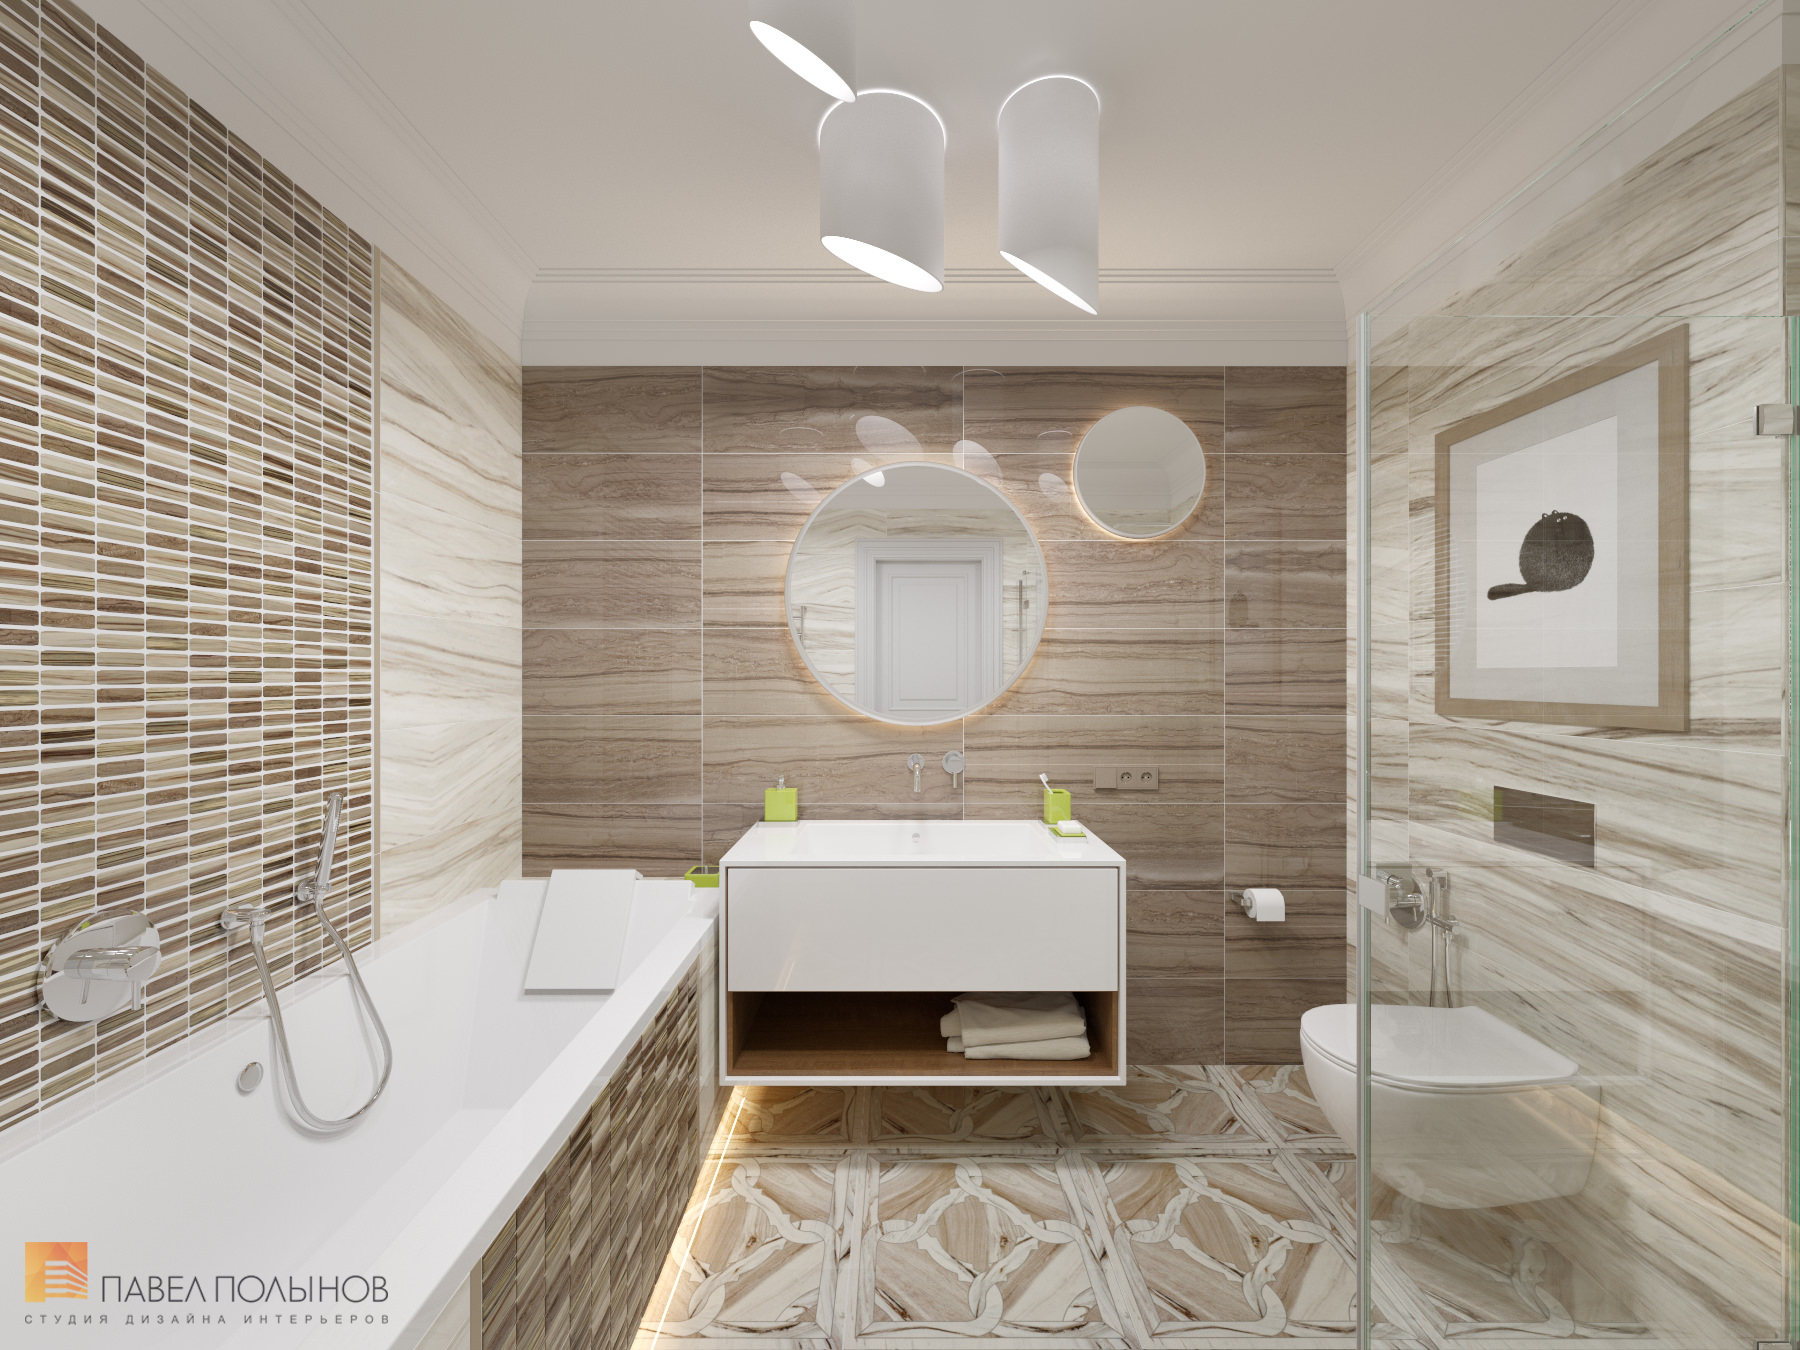 Фото дизайн ванной из проекта «Интерьер квартиры в стиле неоклассики, ЖК «Парадный квартал», 190 кв.м.»